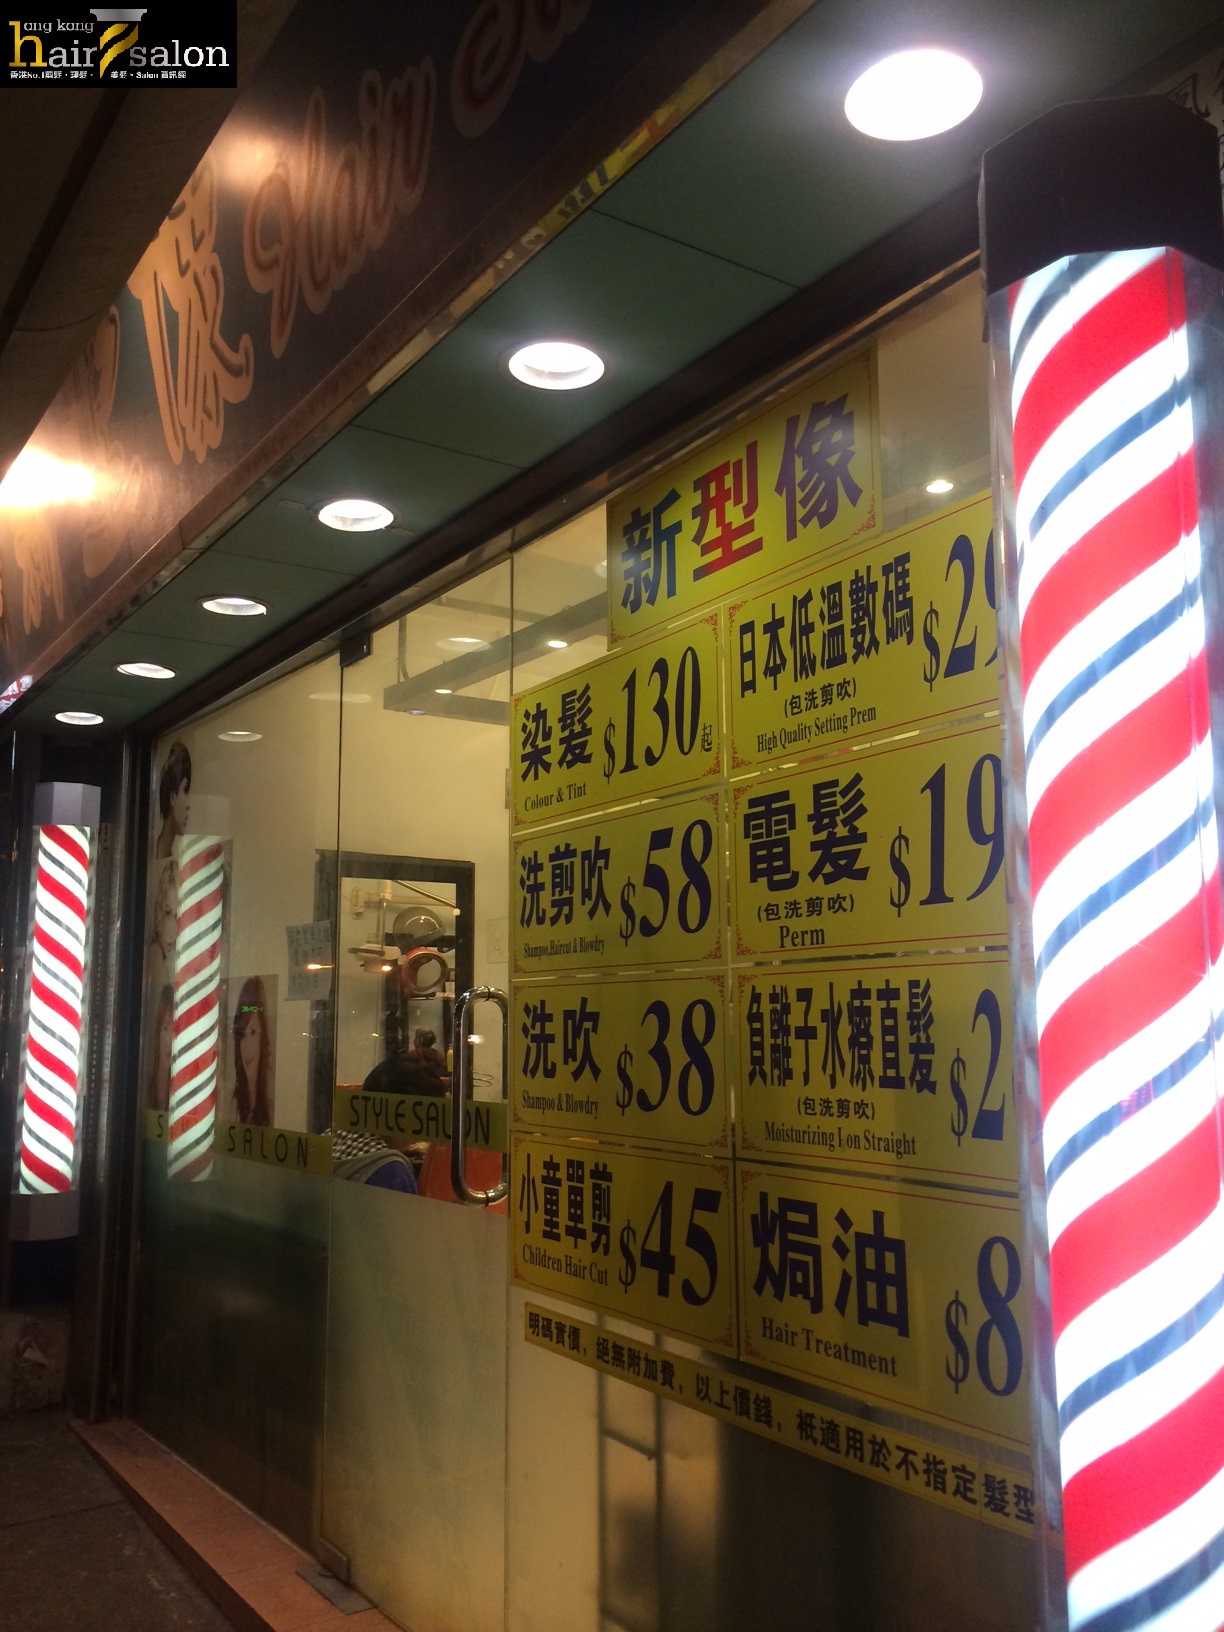 香港美髮網 HK Hair Salon 髮型屋Salon / 髮型師: 新型像 Hair Salon